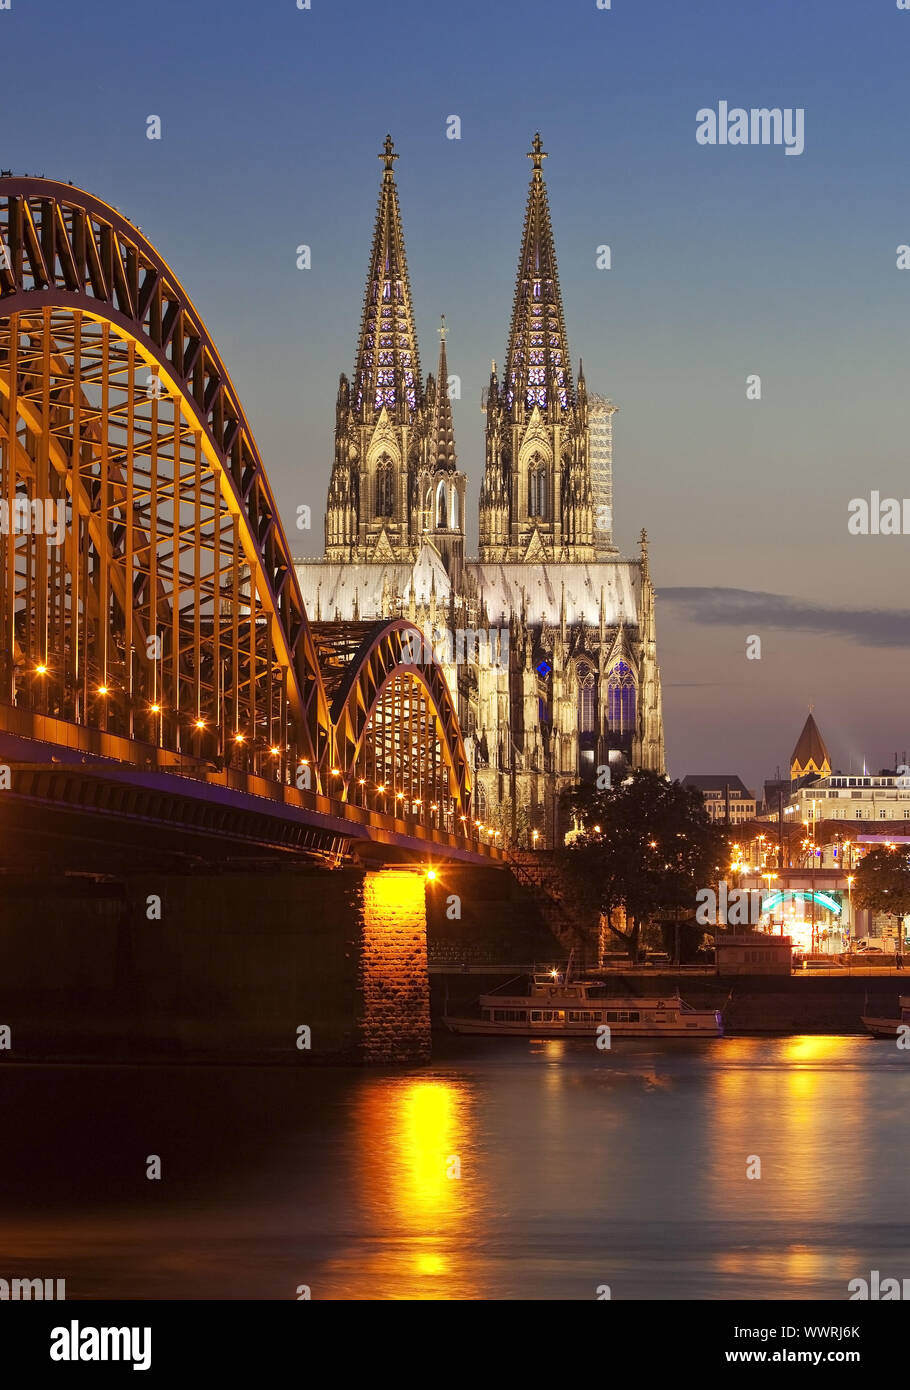 La cattedrale di Colonia con ponte di Hohenzollern nel crepuscolo, Colonia, nella Renania settentrionale-Vestfalia, Germania Foto Stock